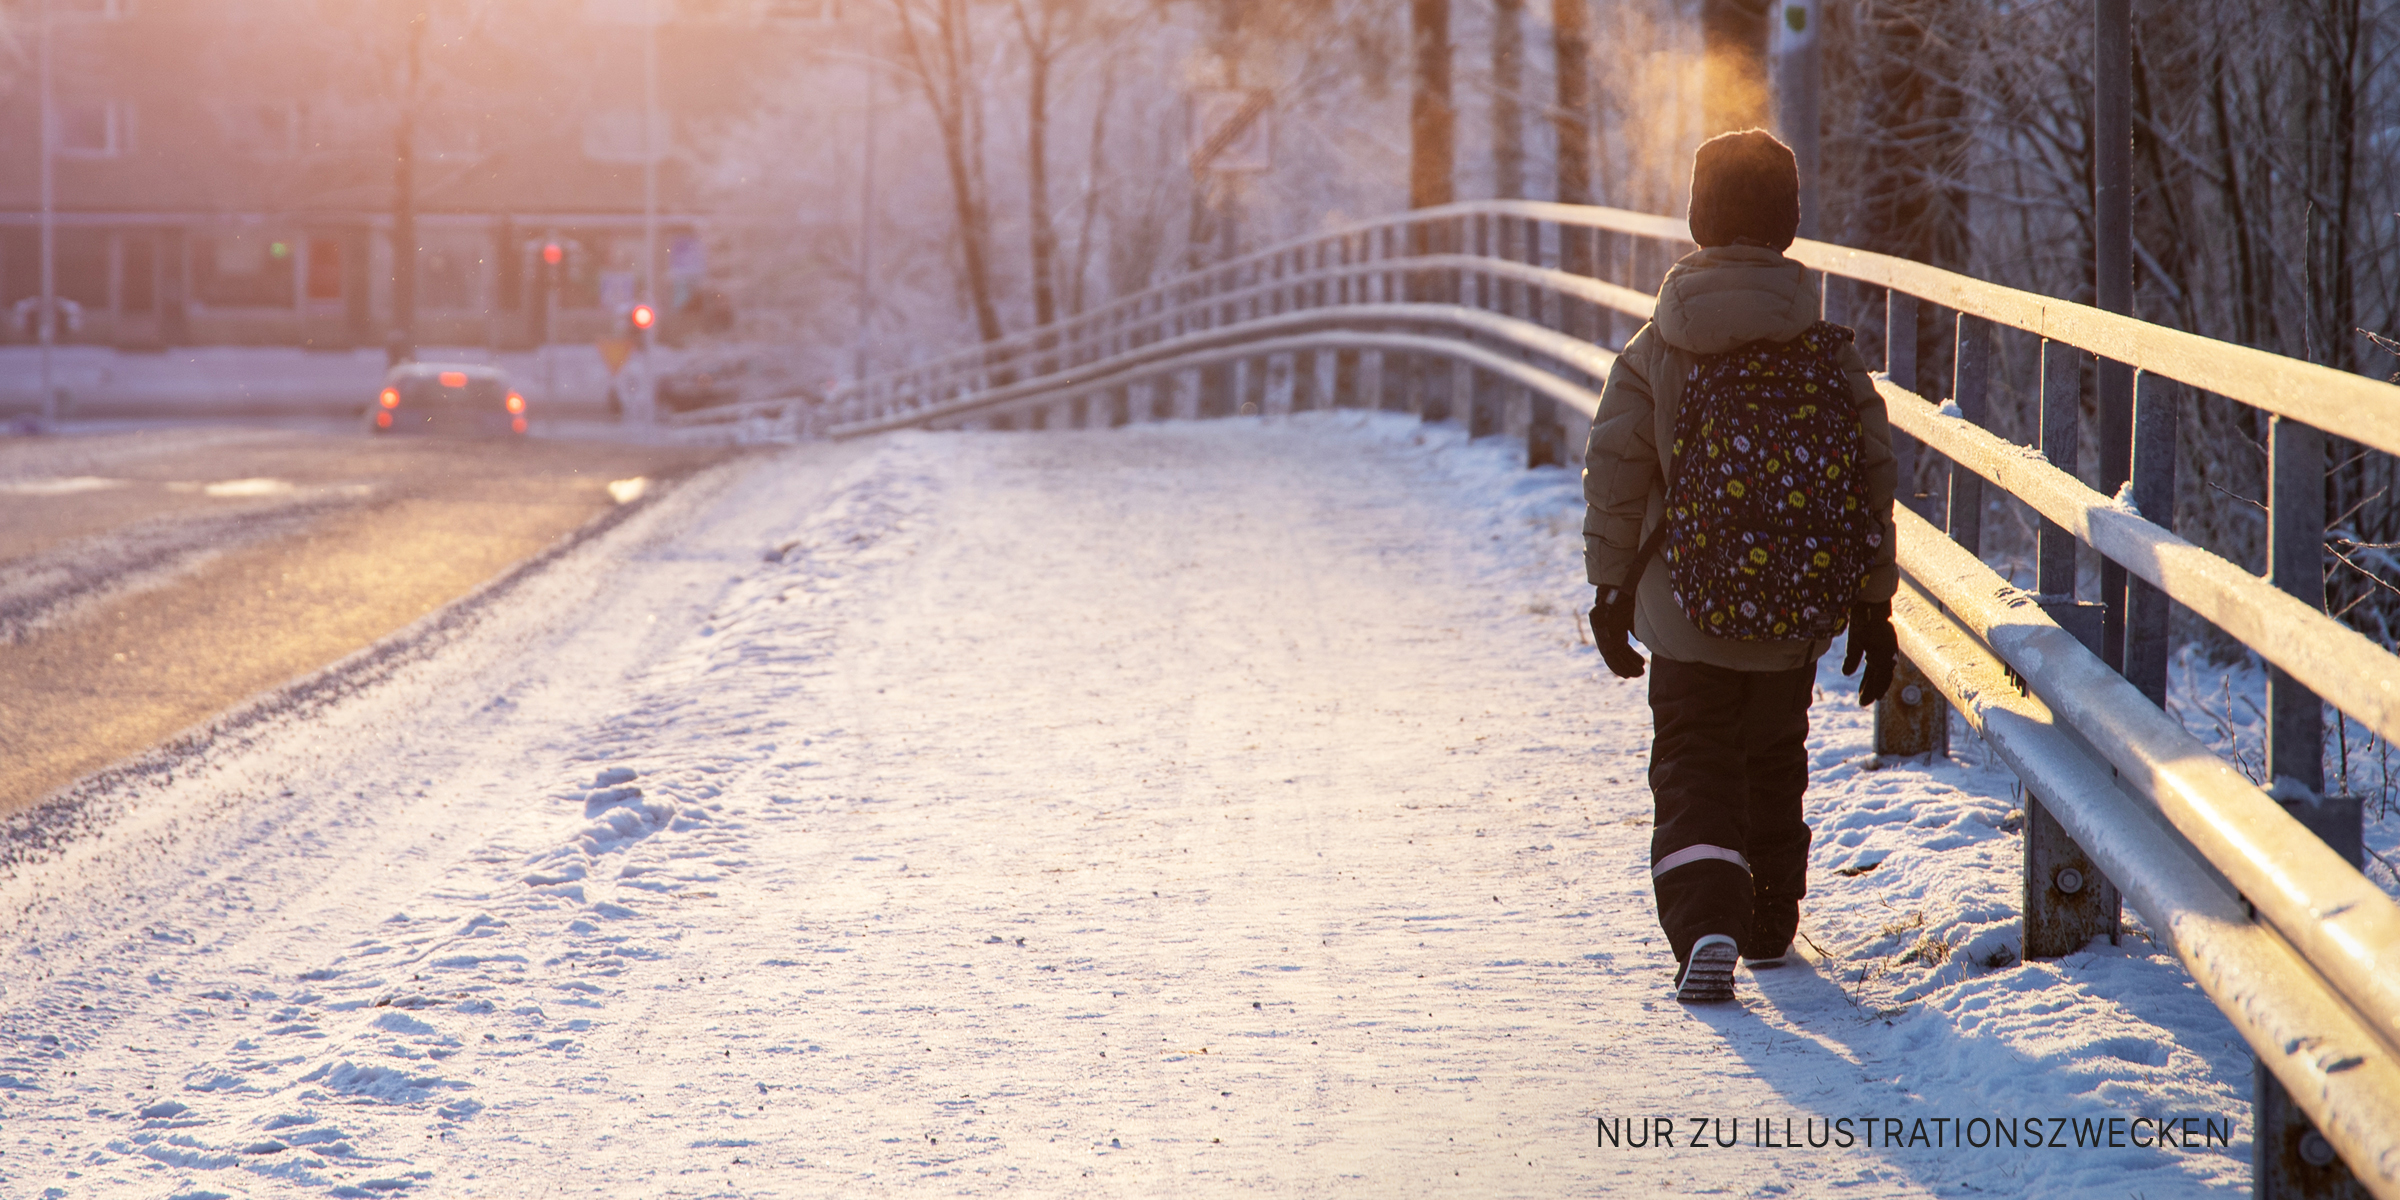 Kleiner Junge geht allein am verschneiten Straßenrand entlang | Quelle: Shutterstock